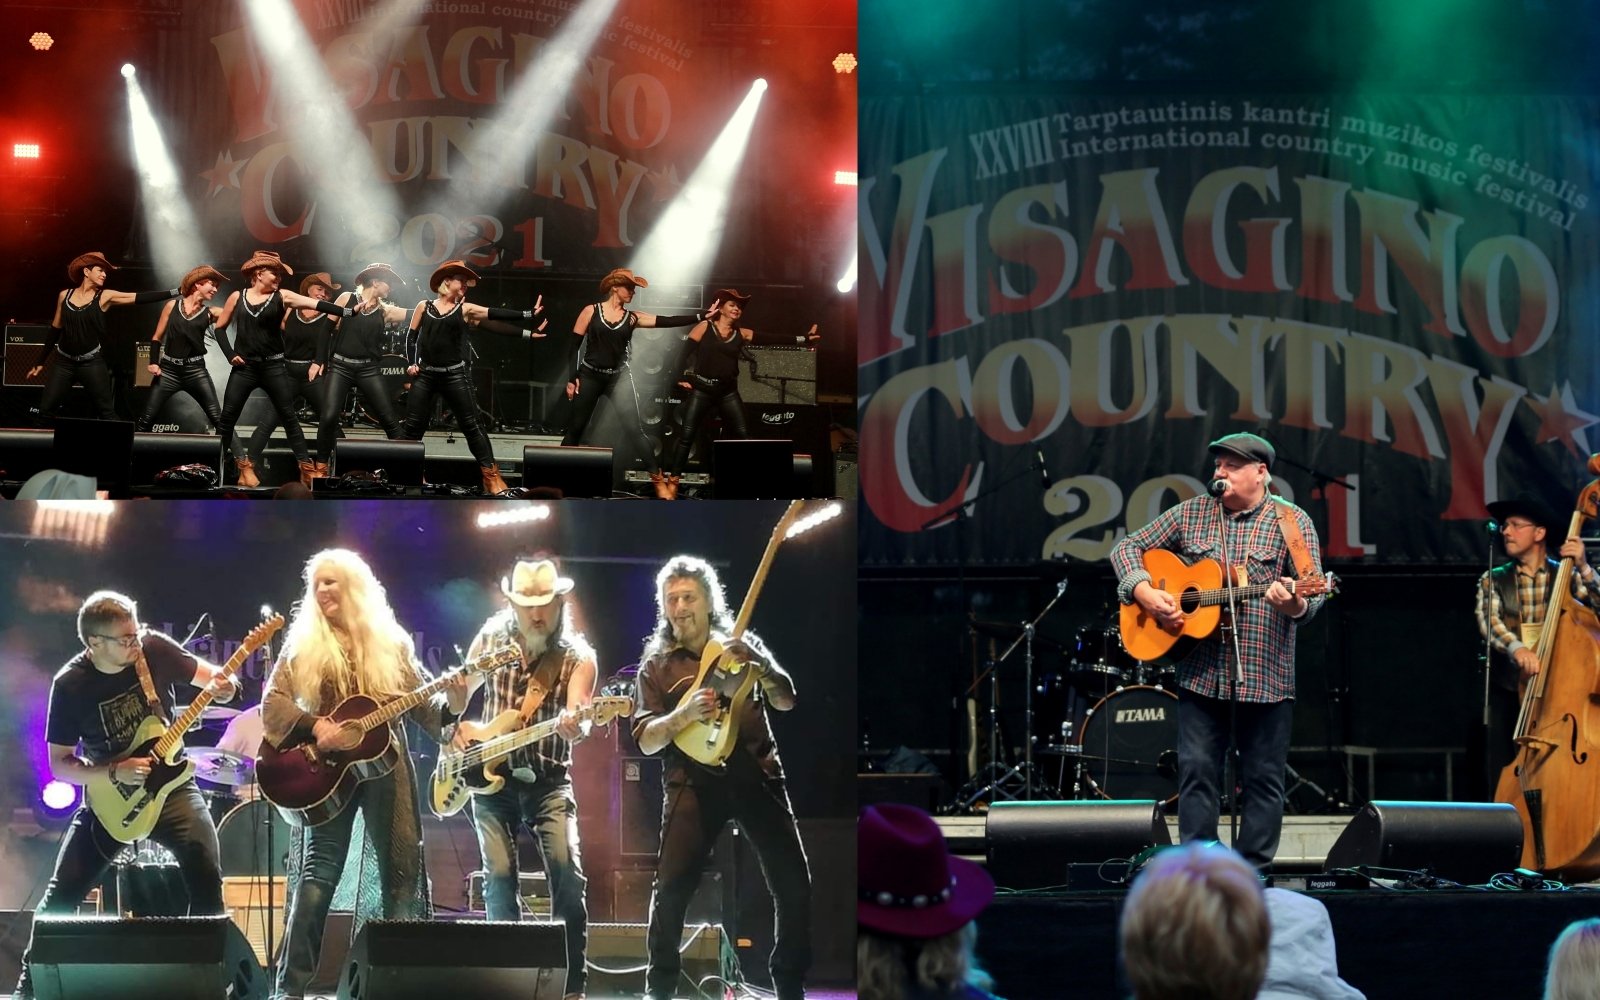 Festivalen «Visagino country’2022» – countryfans, fans av god musikk og artister